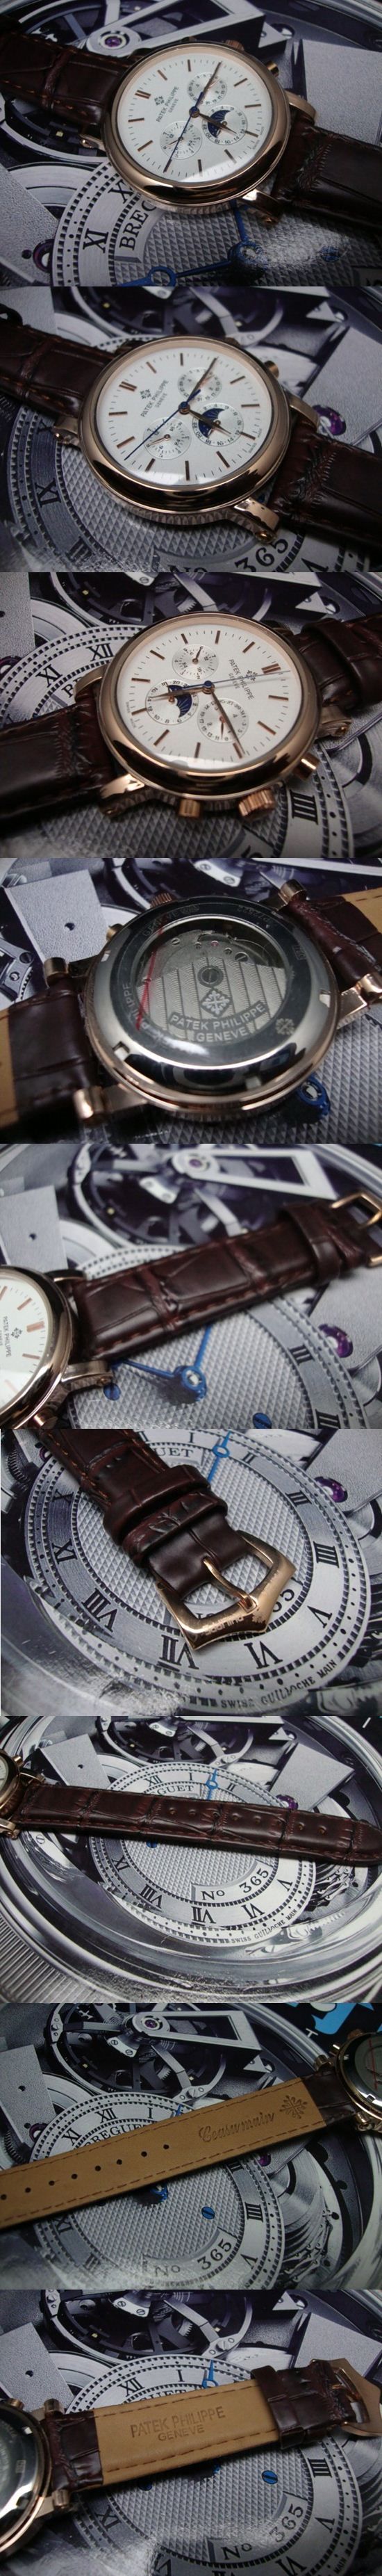 おしゃれなブランド時計がPATEK PHILIPPE-パテック フィリップ腕時計 パテック フィリップ 男/女腕時計 PATEK-PHILIPPE-N-007A を提供します.